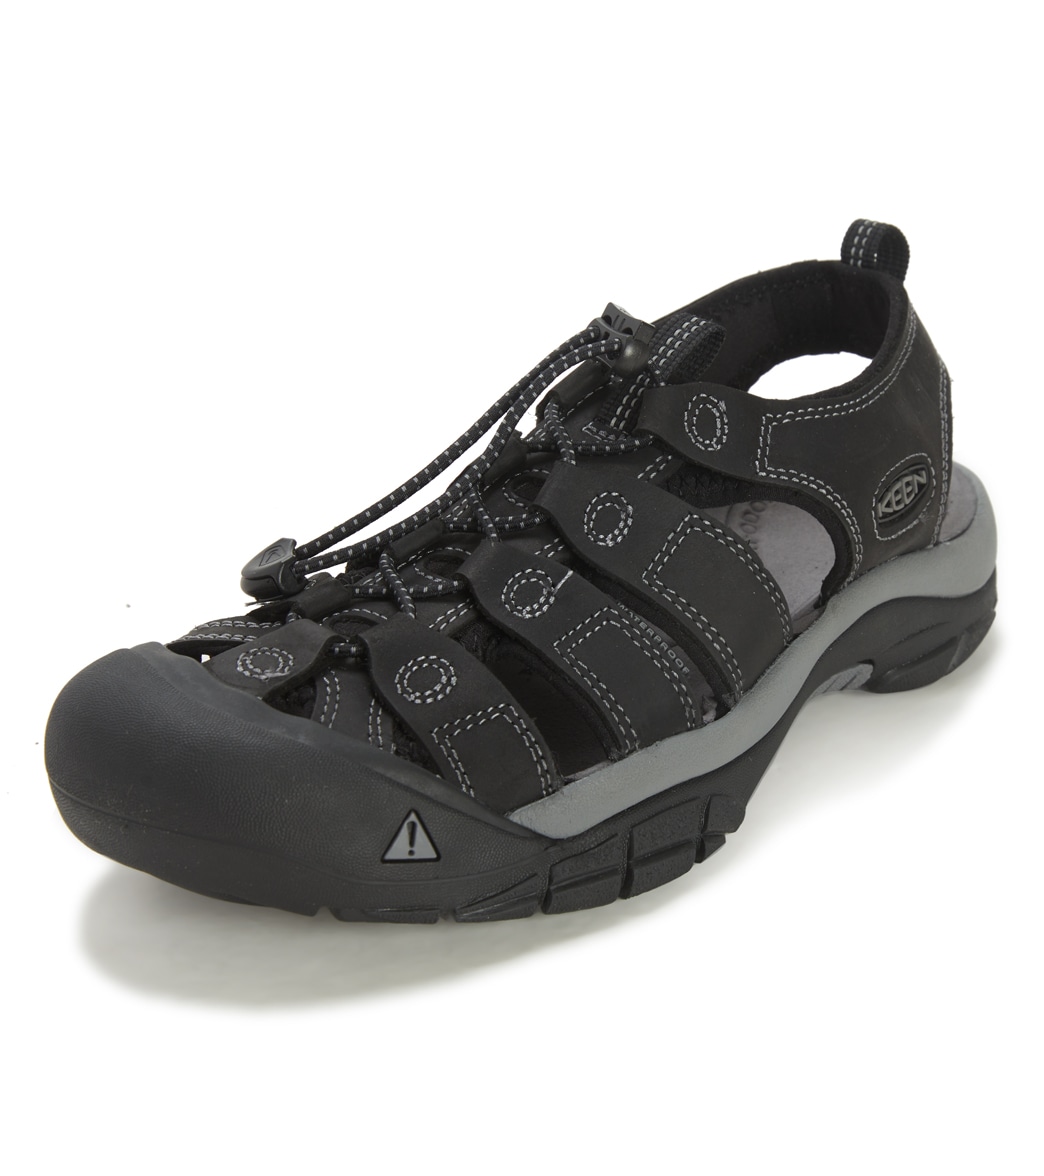 Keen Men's Newport Water Shoes - Black/Steel Grey 10 - Swimoutlet.com